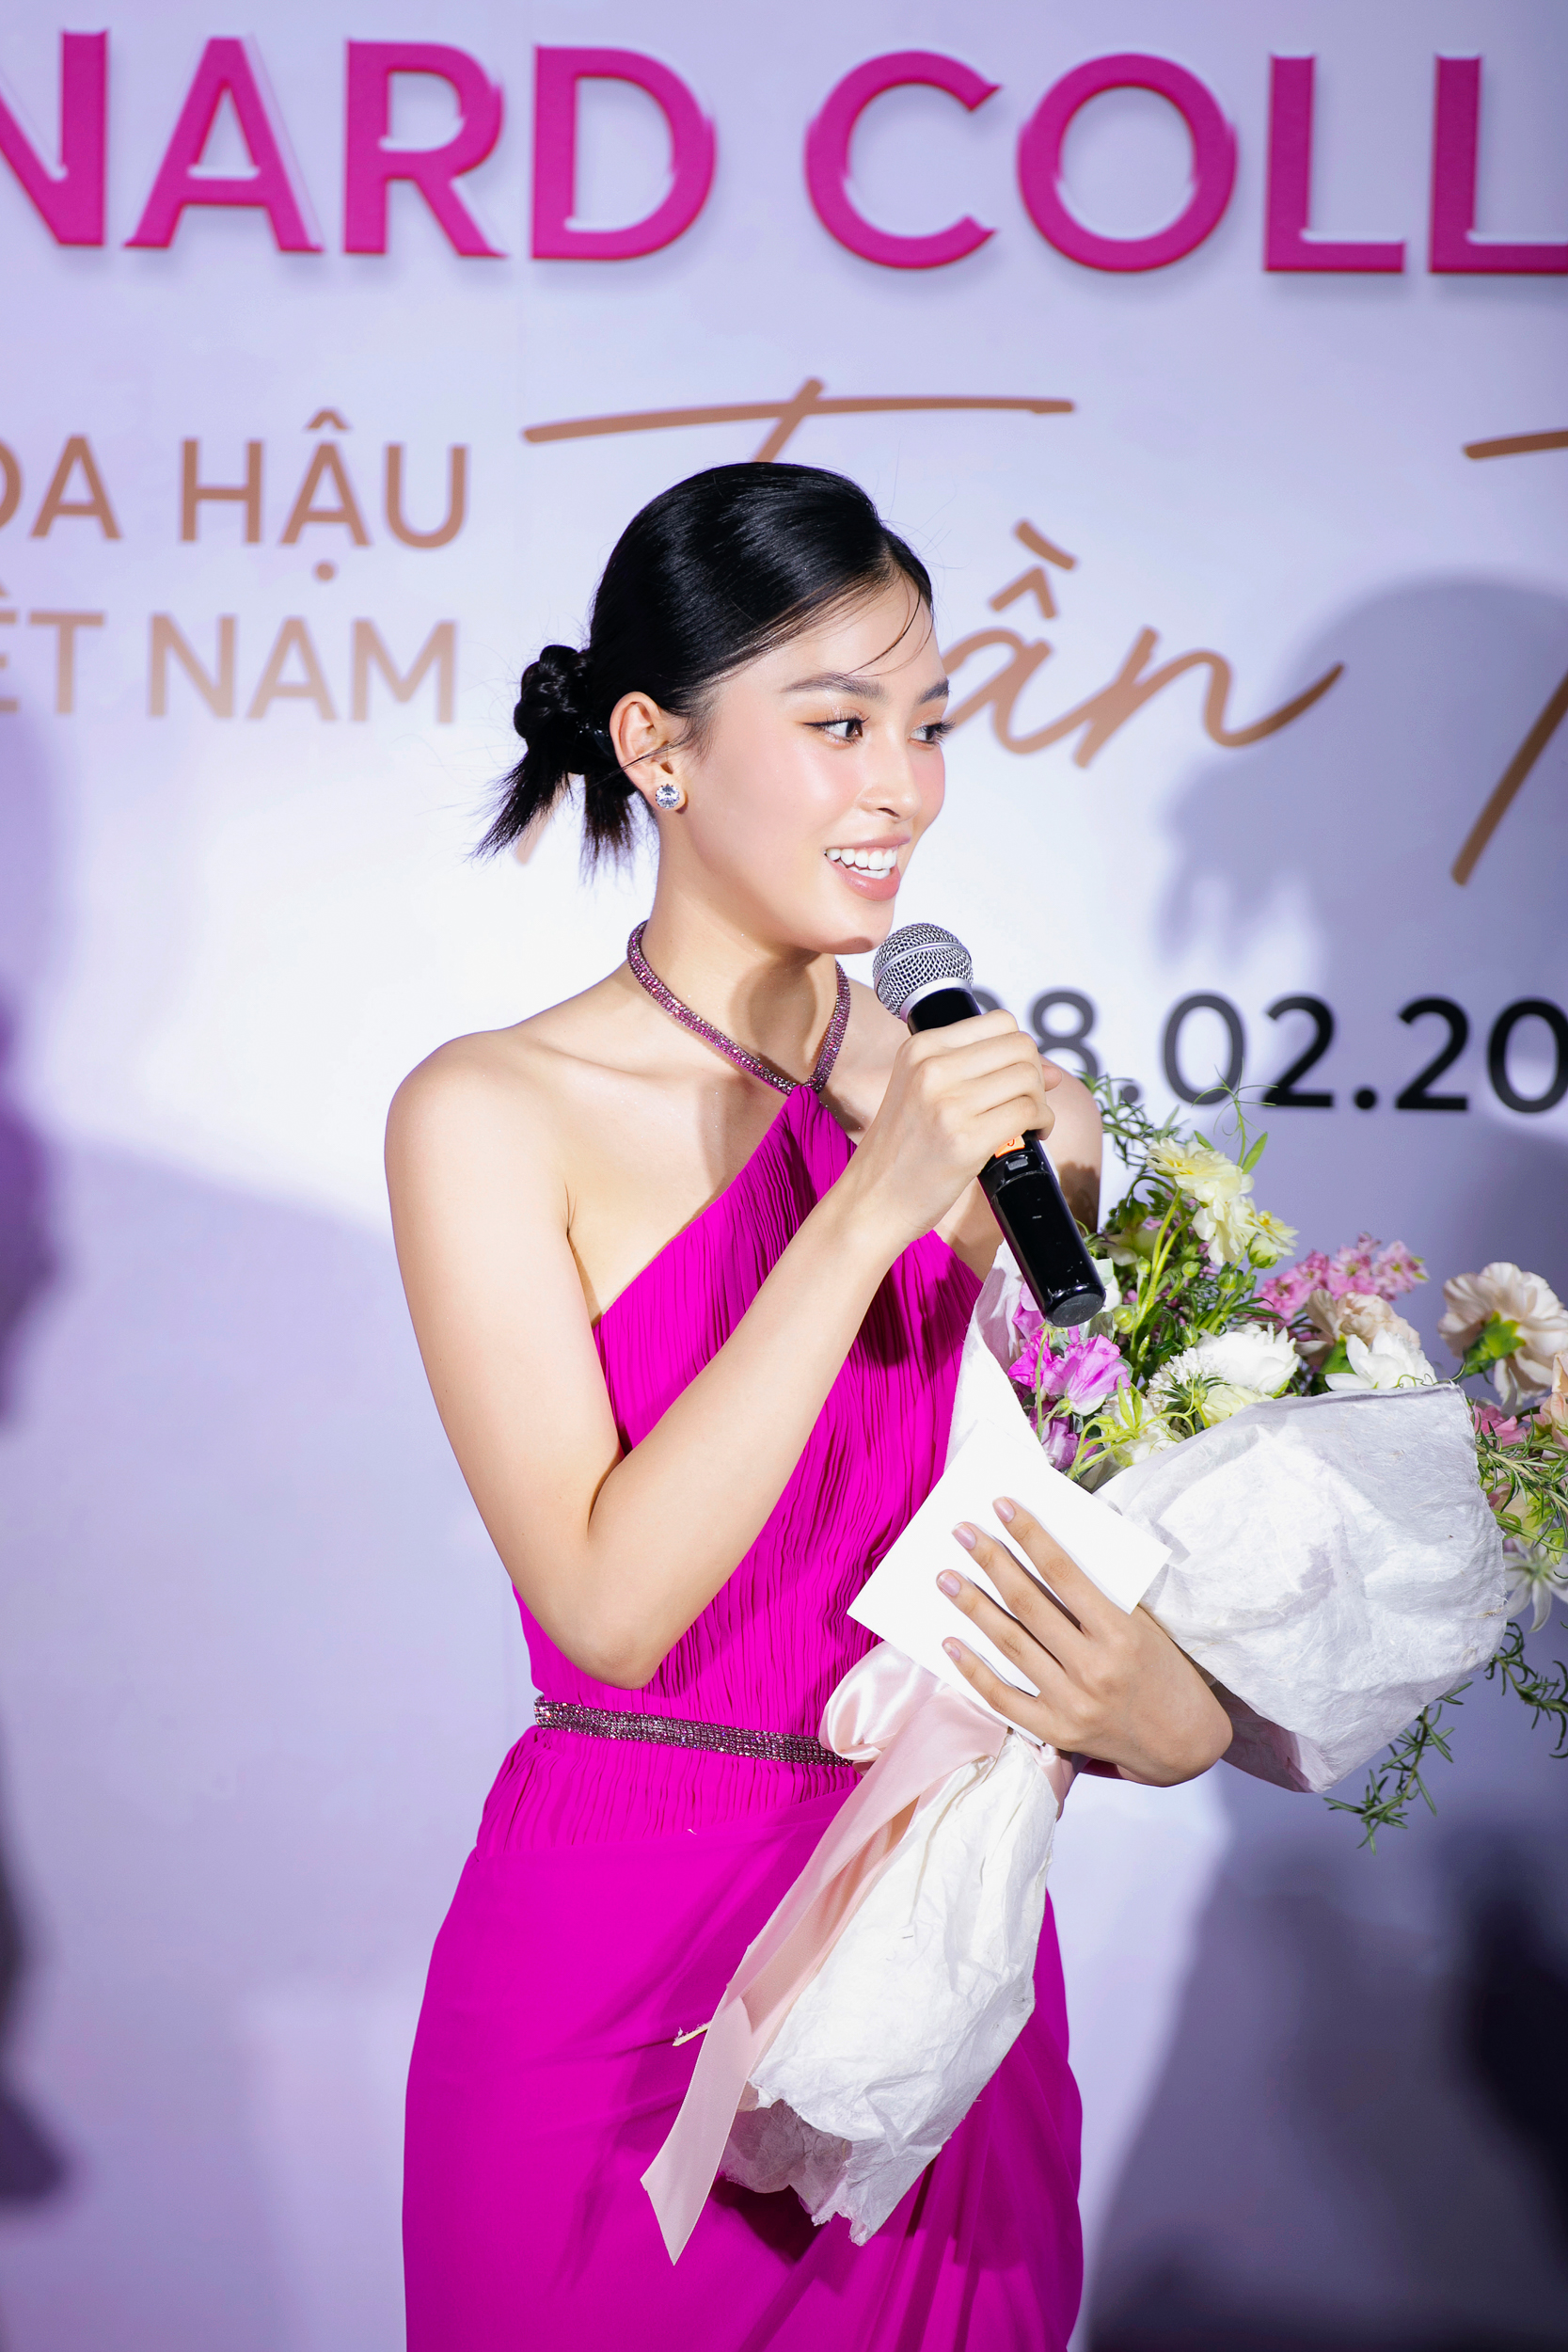 Tiểu Vy gợi cảm với váy hở lưng, xác nhận làm giám khảo Miss World Vietnam 2023  - Ảnh 5.